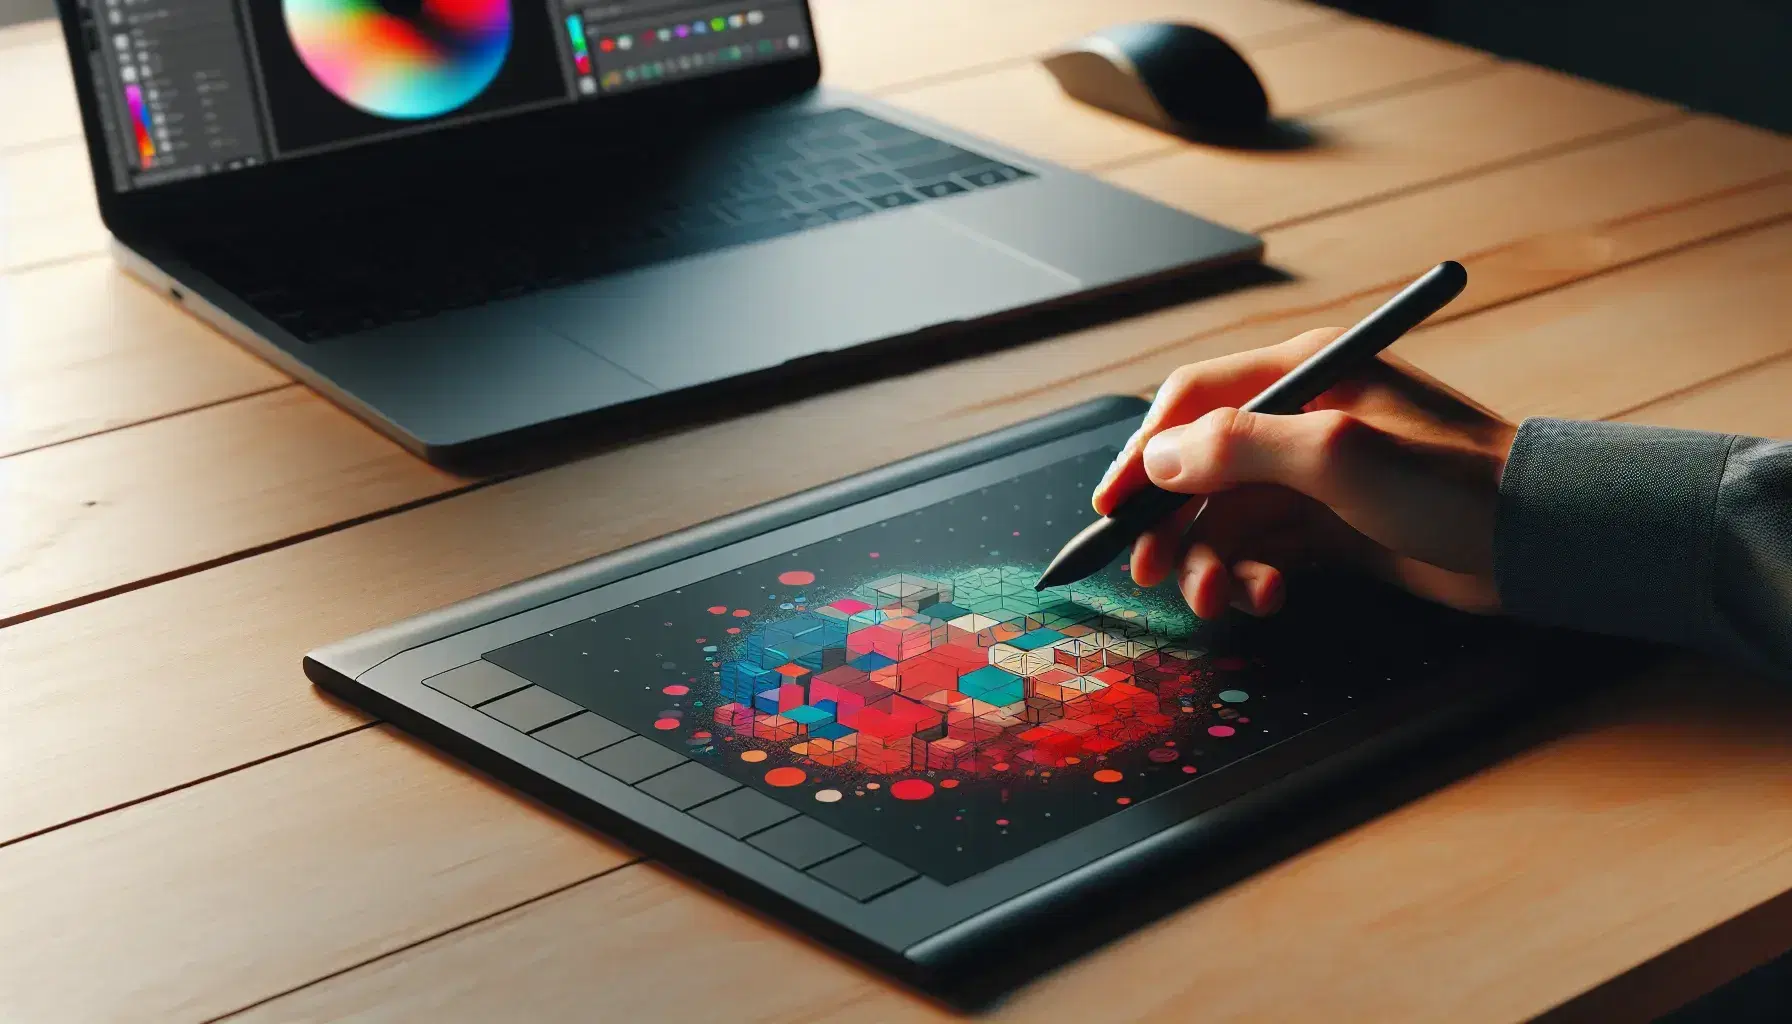 Mano sosteniendo un lápiz óptico sobre una tableta gráfica con diseño de formas geométricas coloridas en la pantalla, teclado inalámbrico al lado y portátil con paleta de colores al fondo.